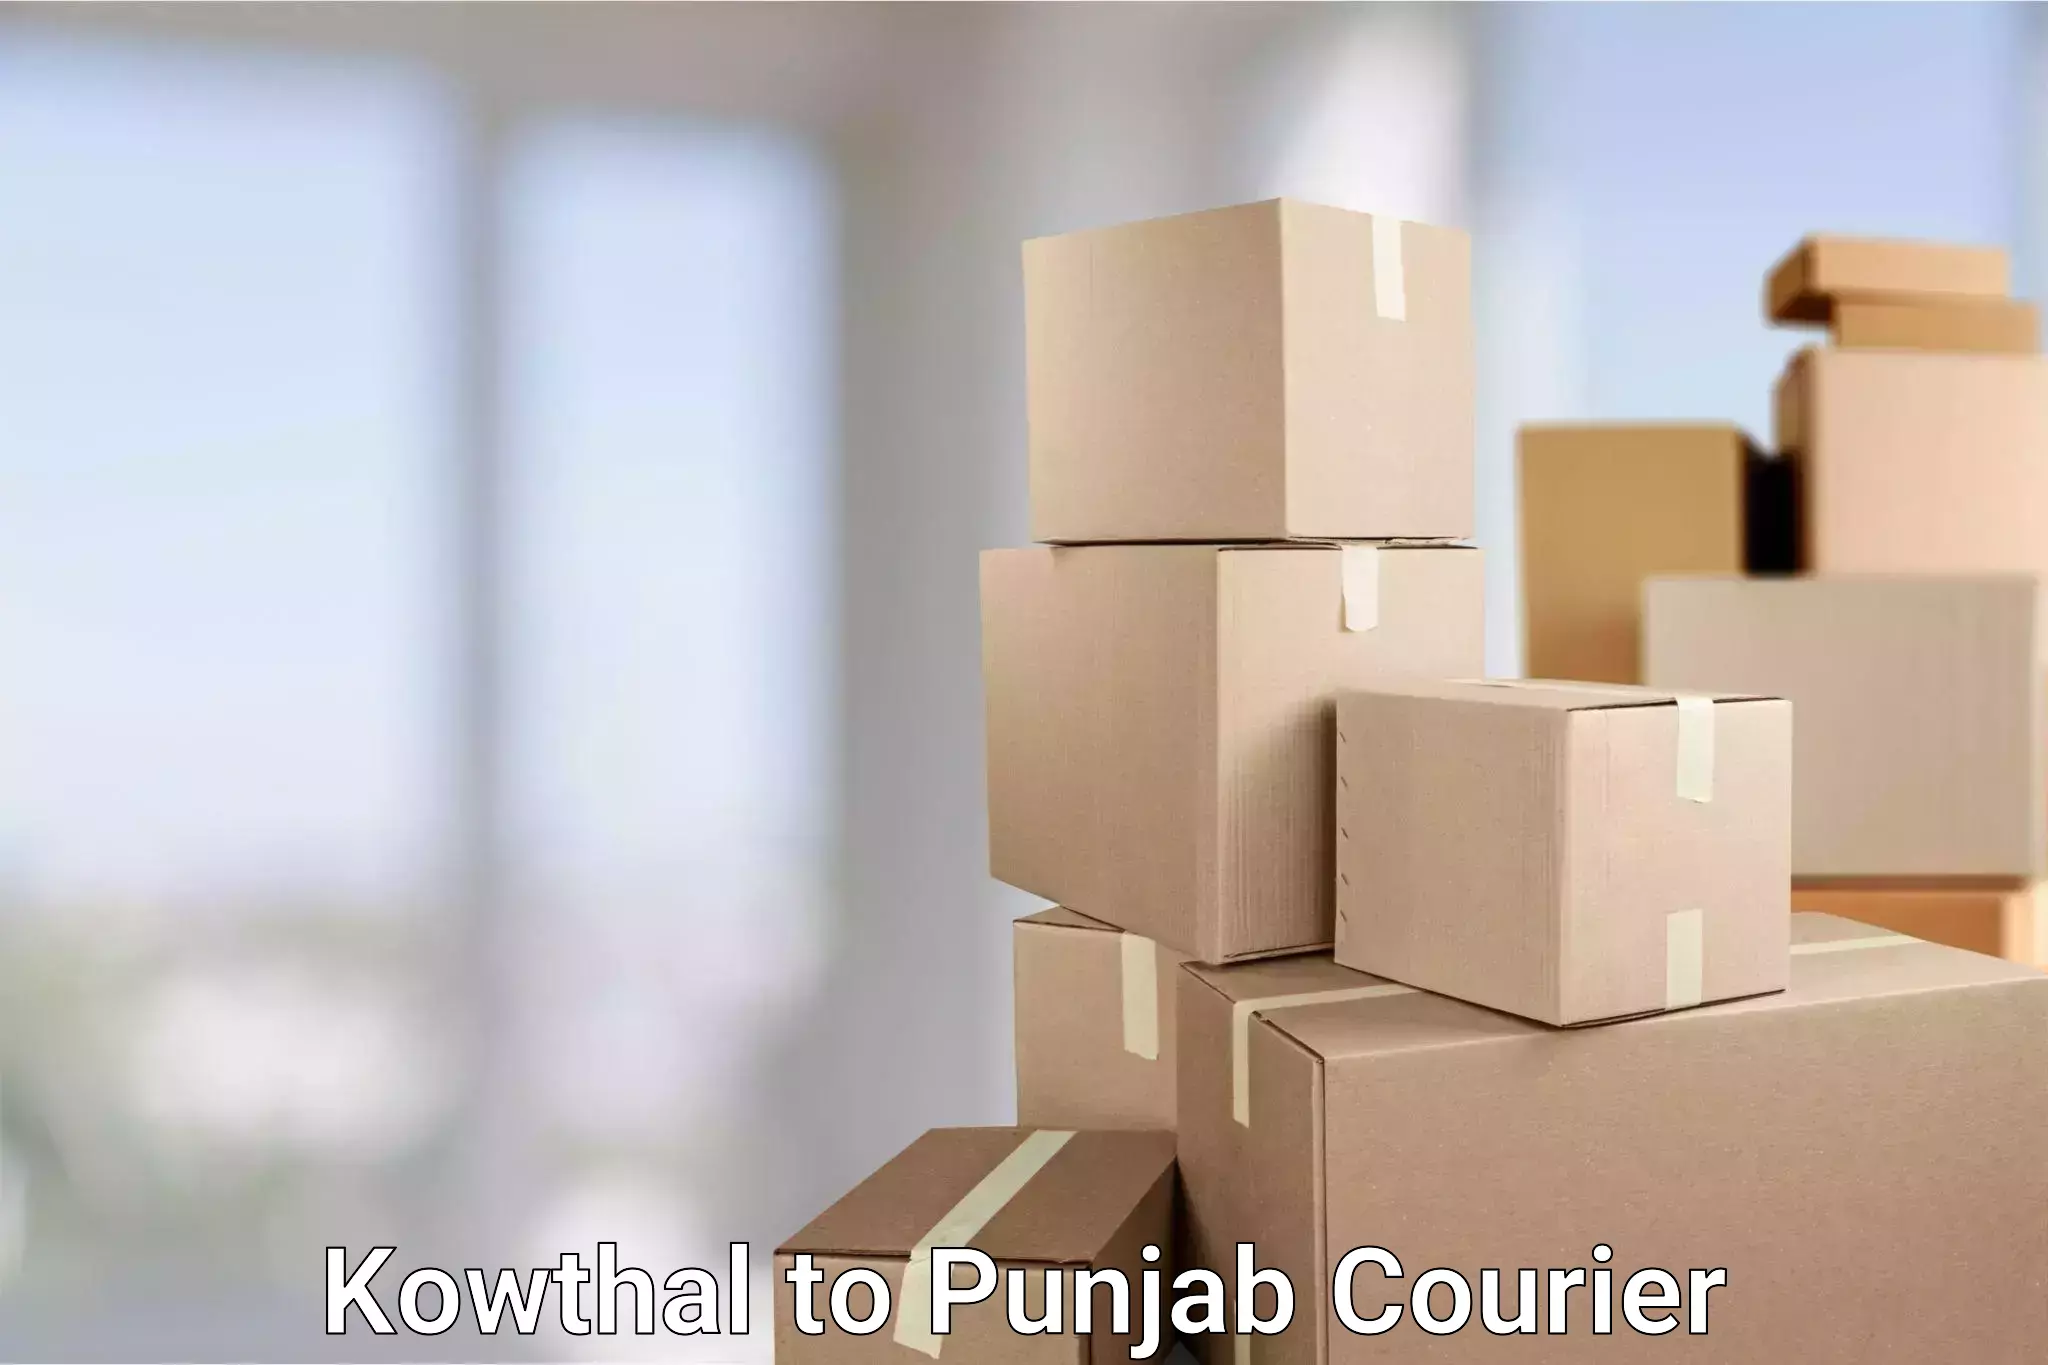 24-hour delivery options Kowthal to Anandpur Sahib